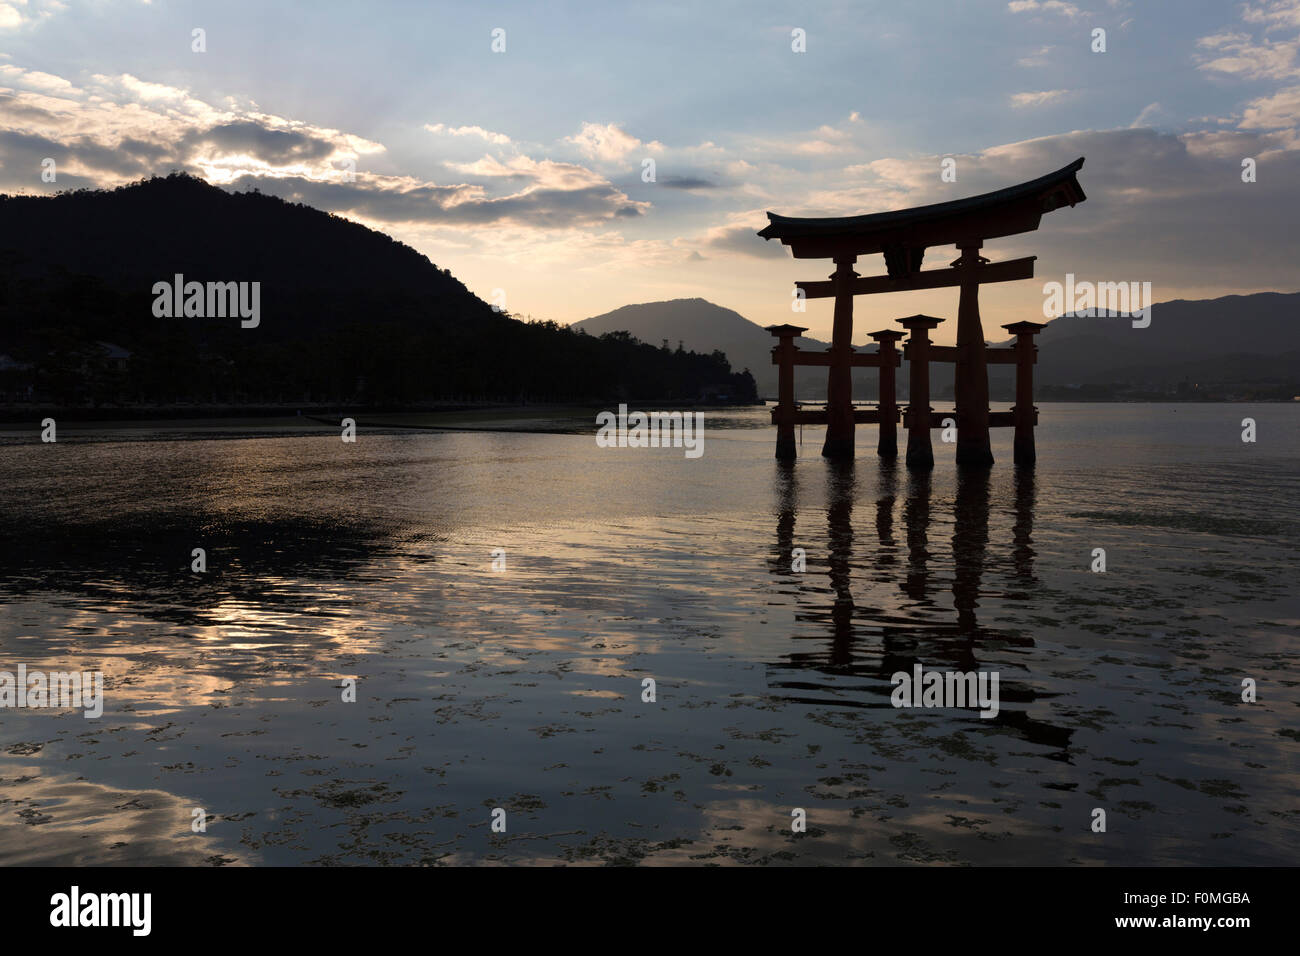 Le Miyajima de torii flottant d'Itsukushima au coucher du soleil, l'île de Miyajima, dans l'ouest de Honshu, Japon, Asie Banque D'Images